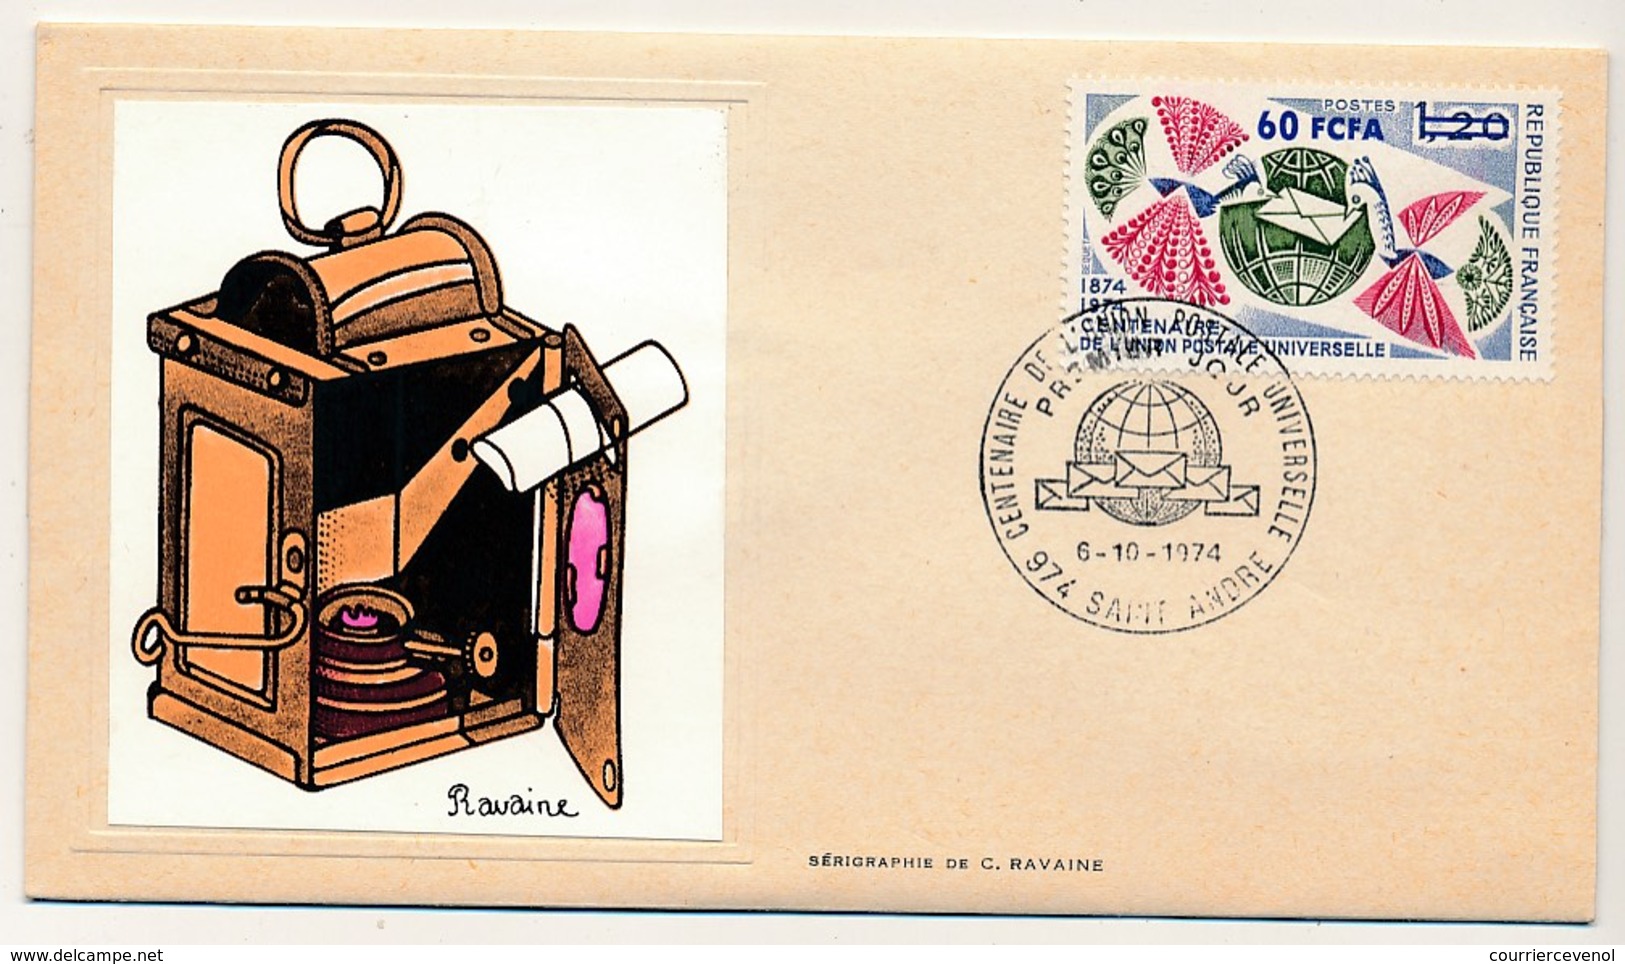 FRANCE-REUNION - Enveloppe FDC Thiaude - Centenaire De L'Union Postale Universelle - 6/10/1974 - Covers & Documents